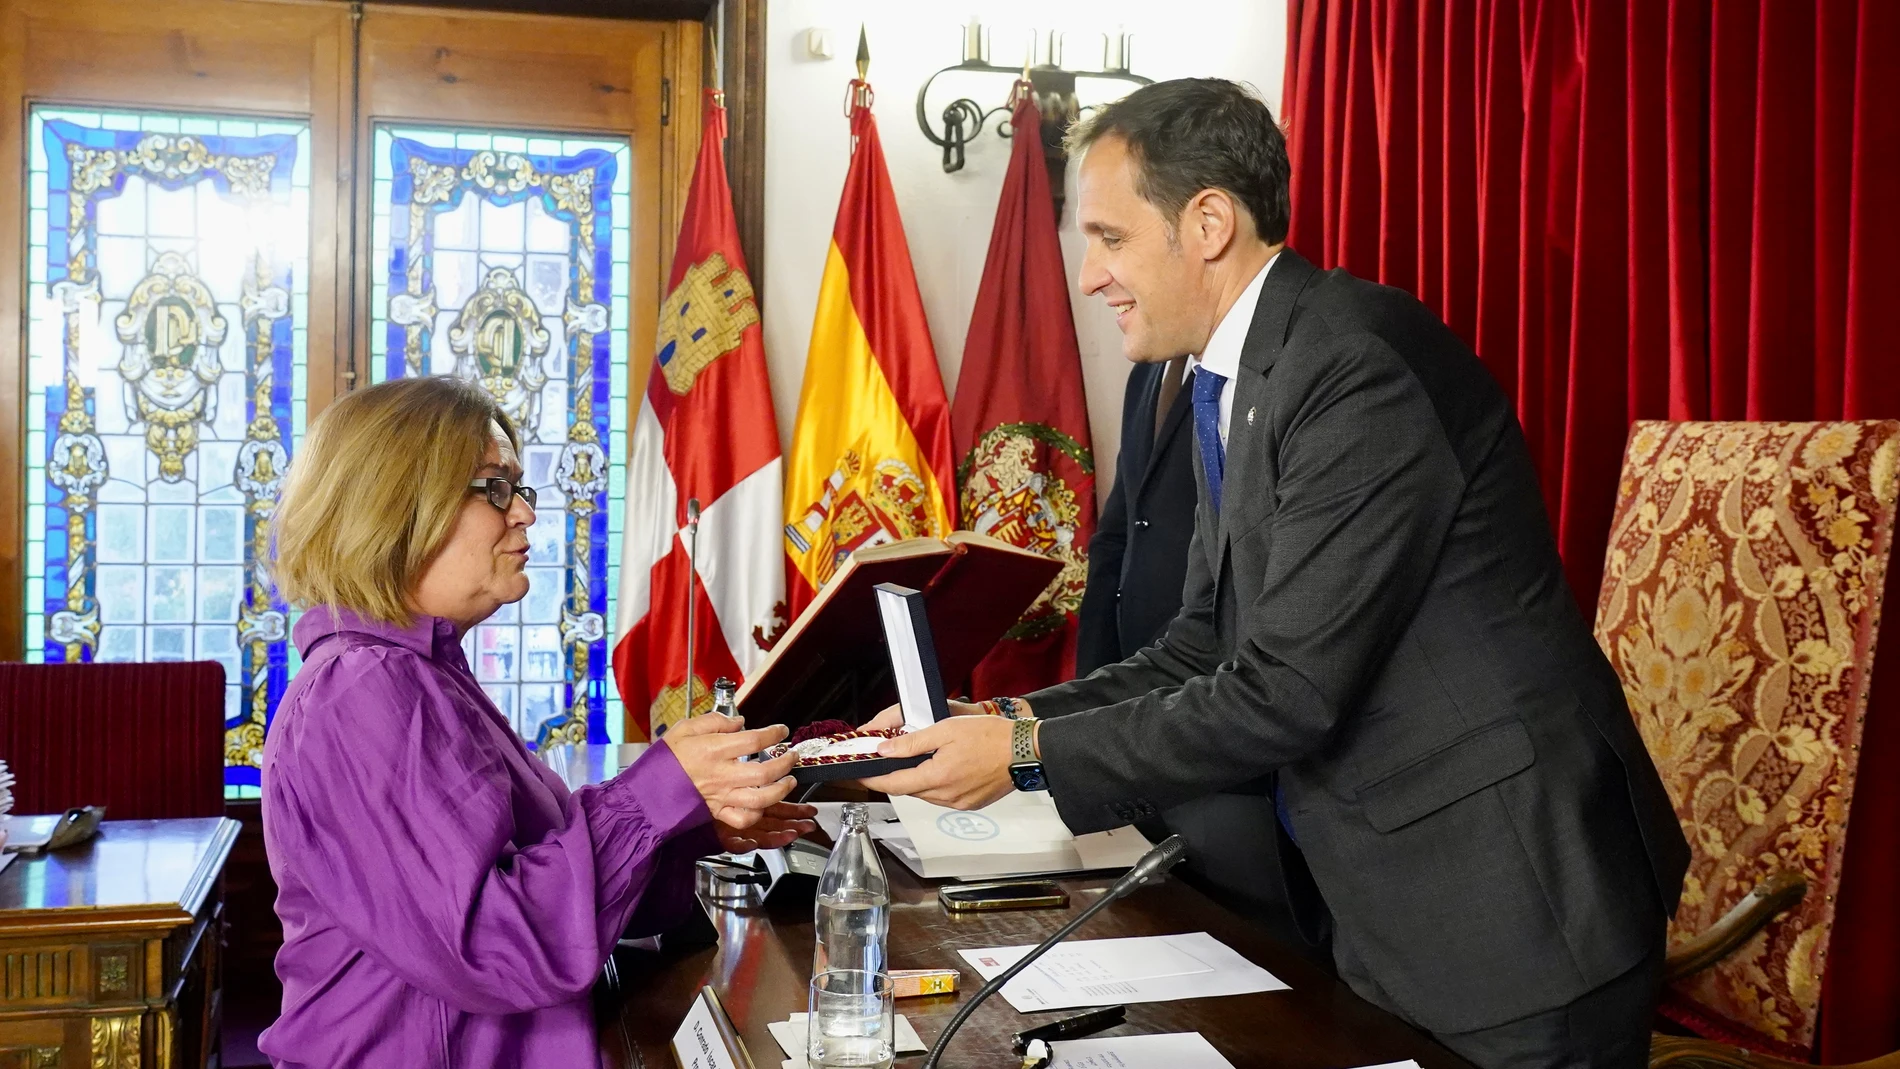 El presidente de la Diputación de Valladolid, Conrado Íscar, entrega el acta a la nueva diputada socialista a Fátima Caamaño Lestón